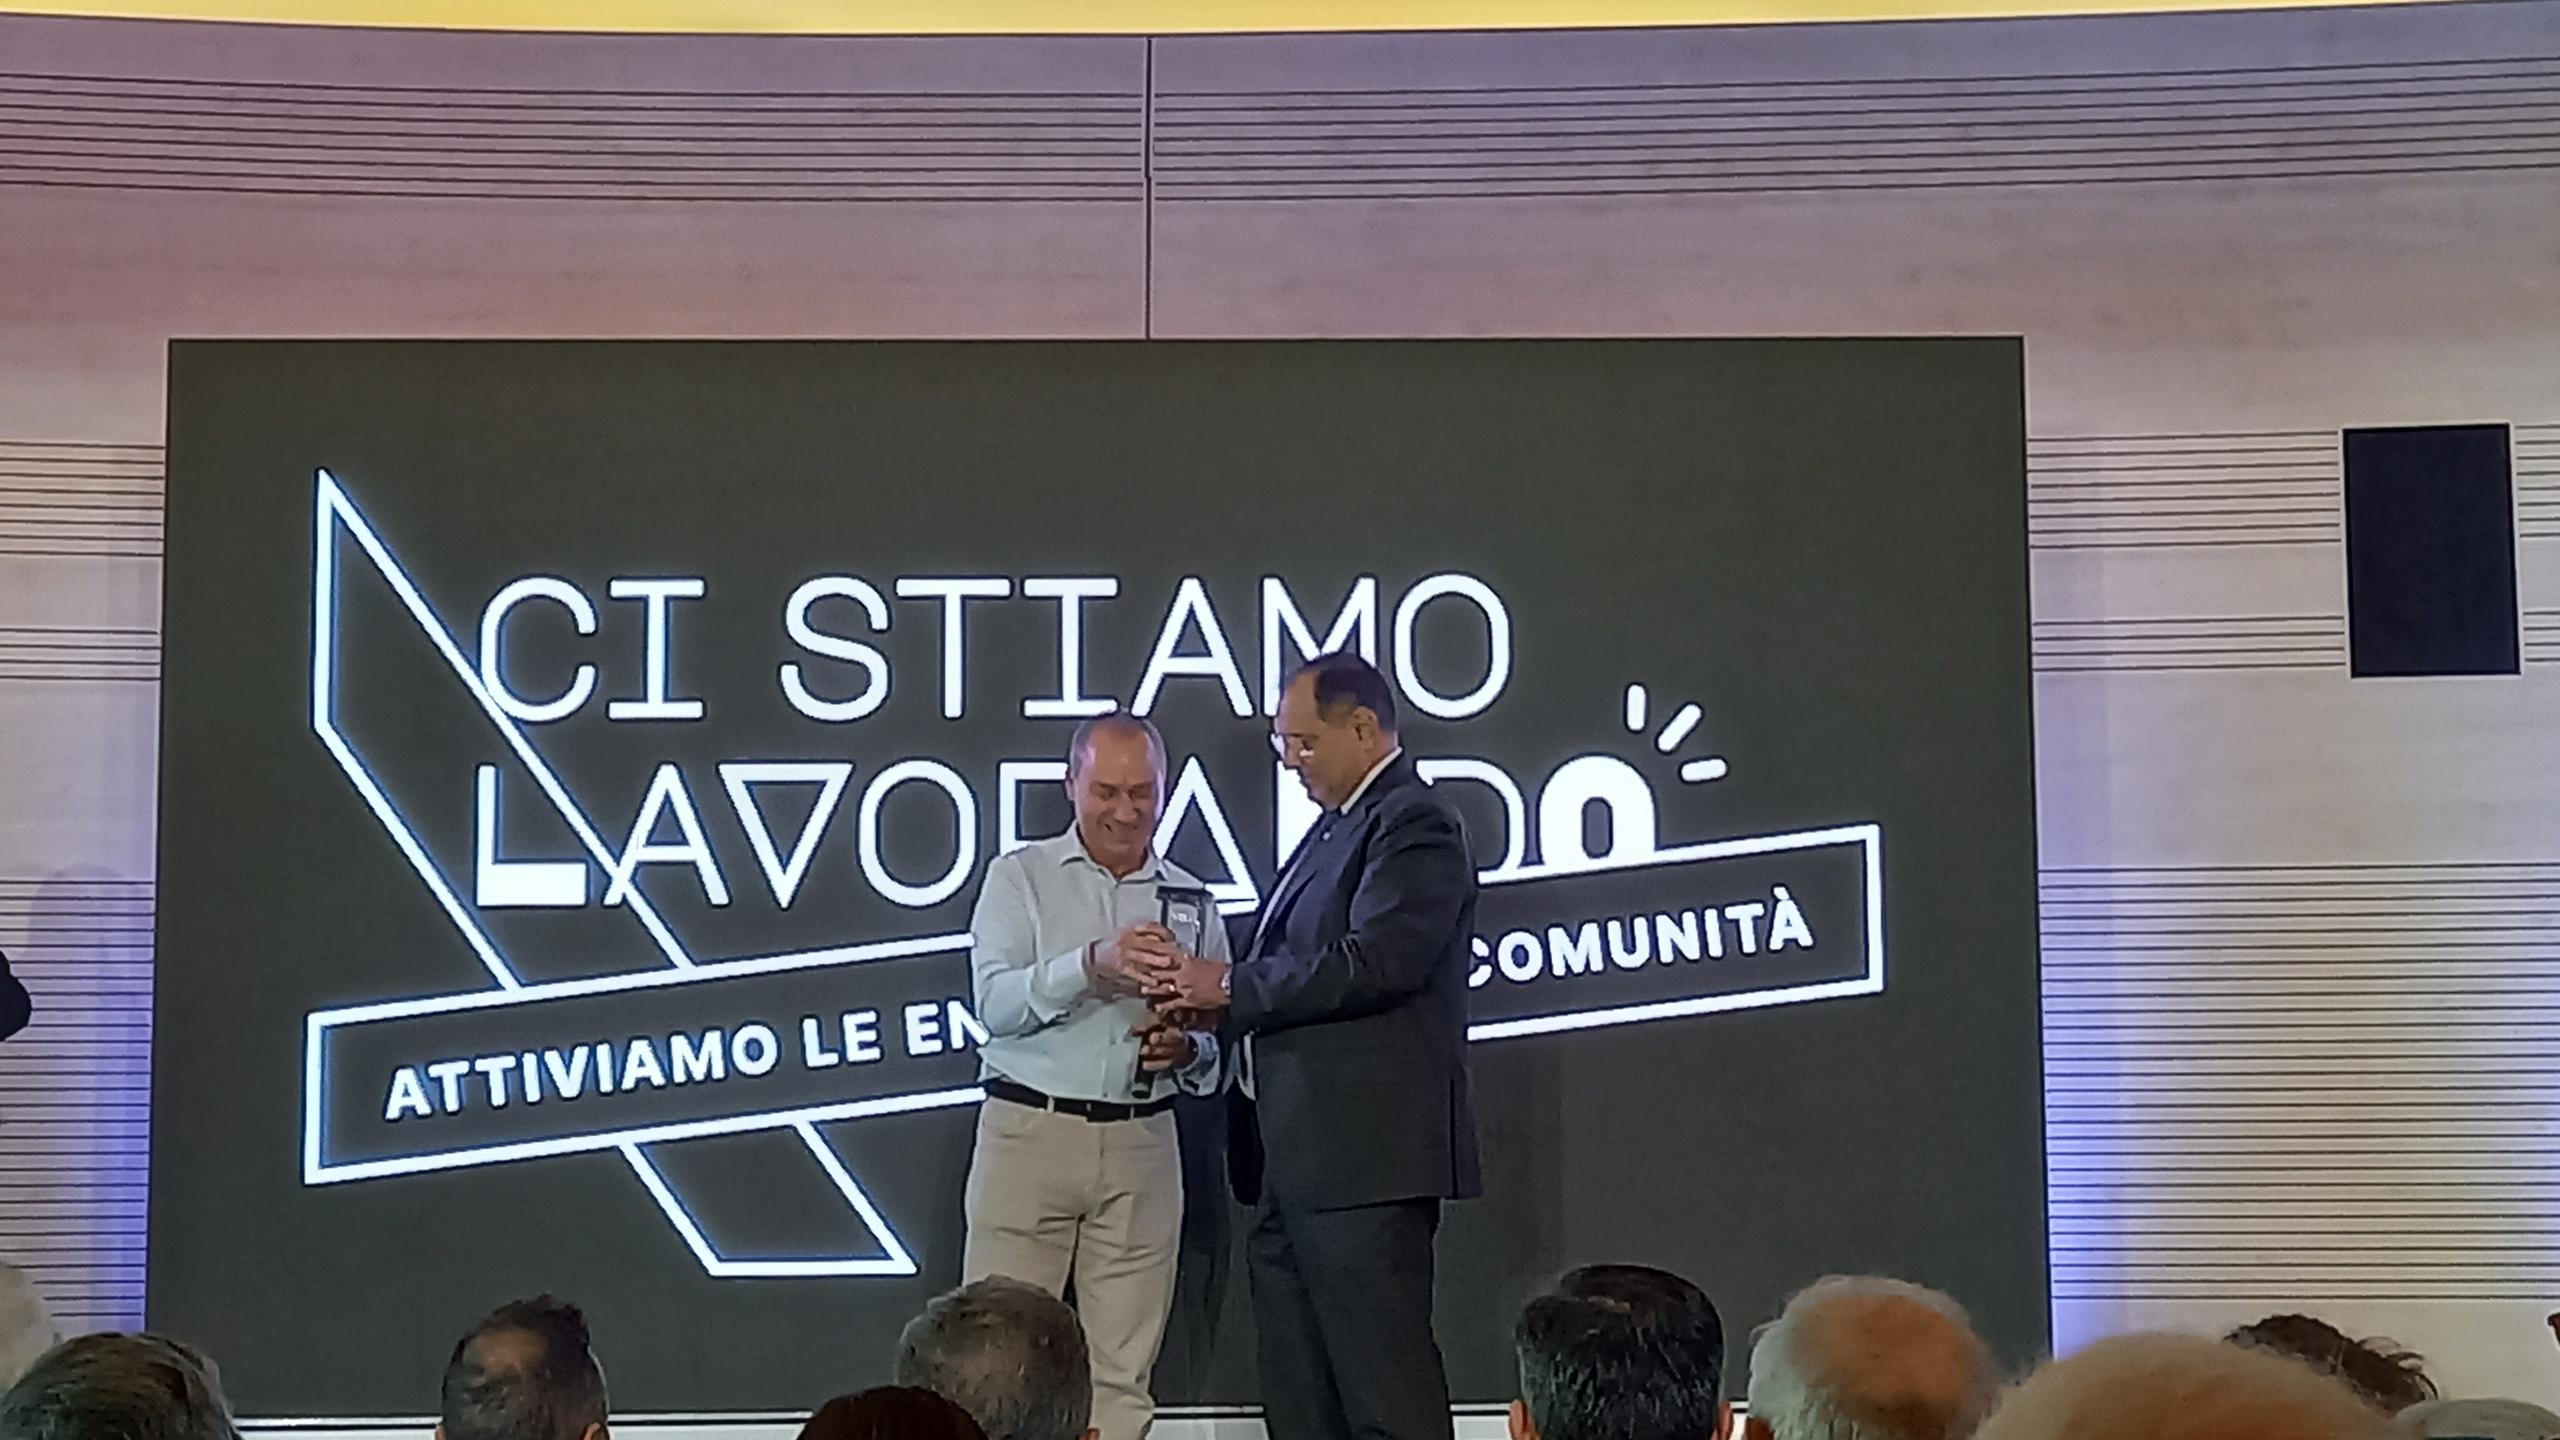 Rizziero Crocicchia riceve il premio dal Prefetto Antonio Cananà